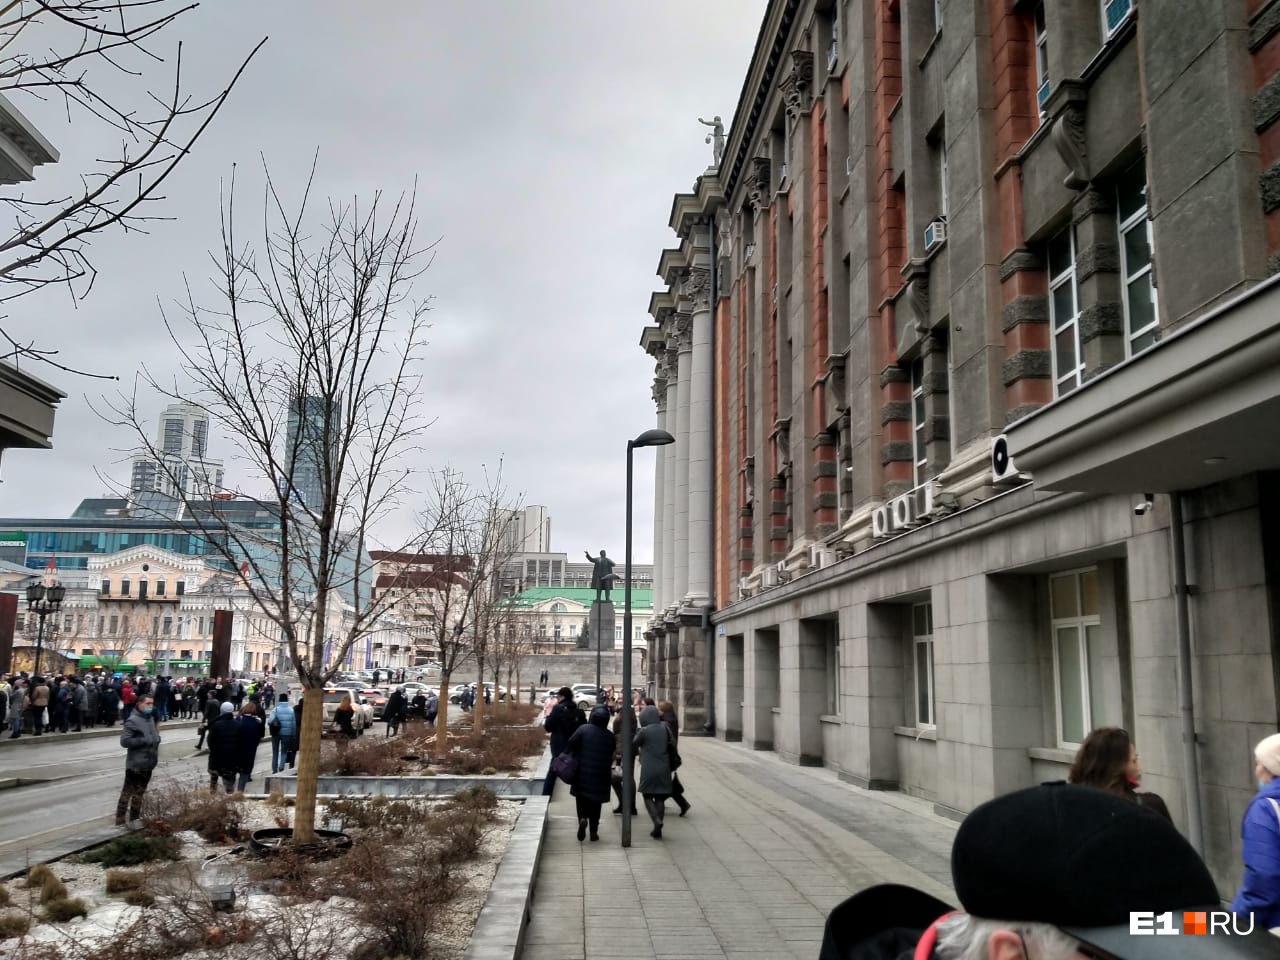 В Екатеринбурге эвакуировали мэрию из-за сигнала о минировании